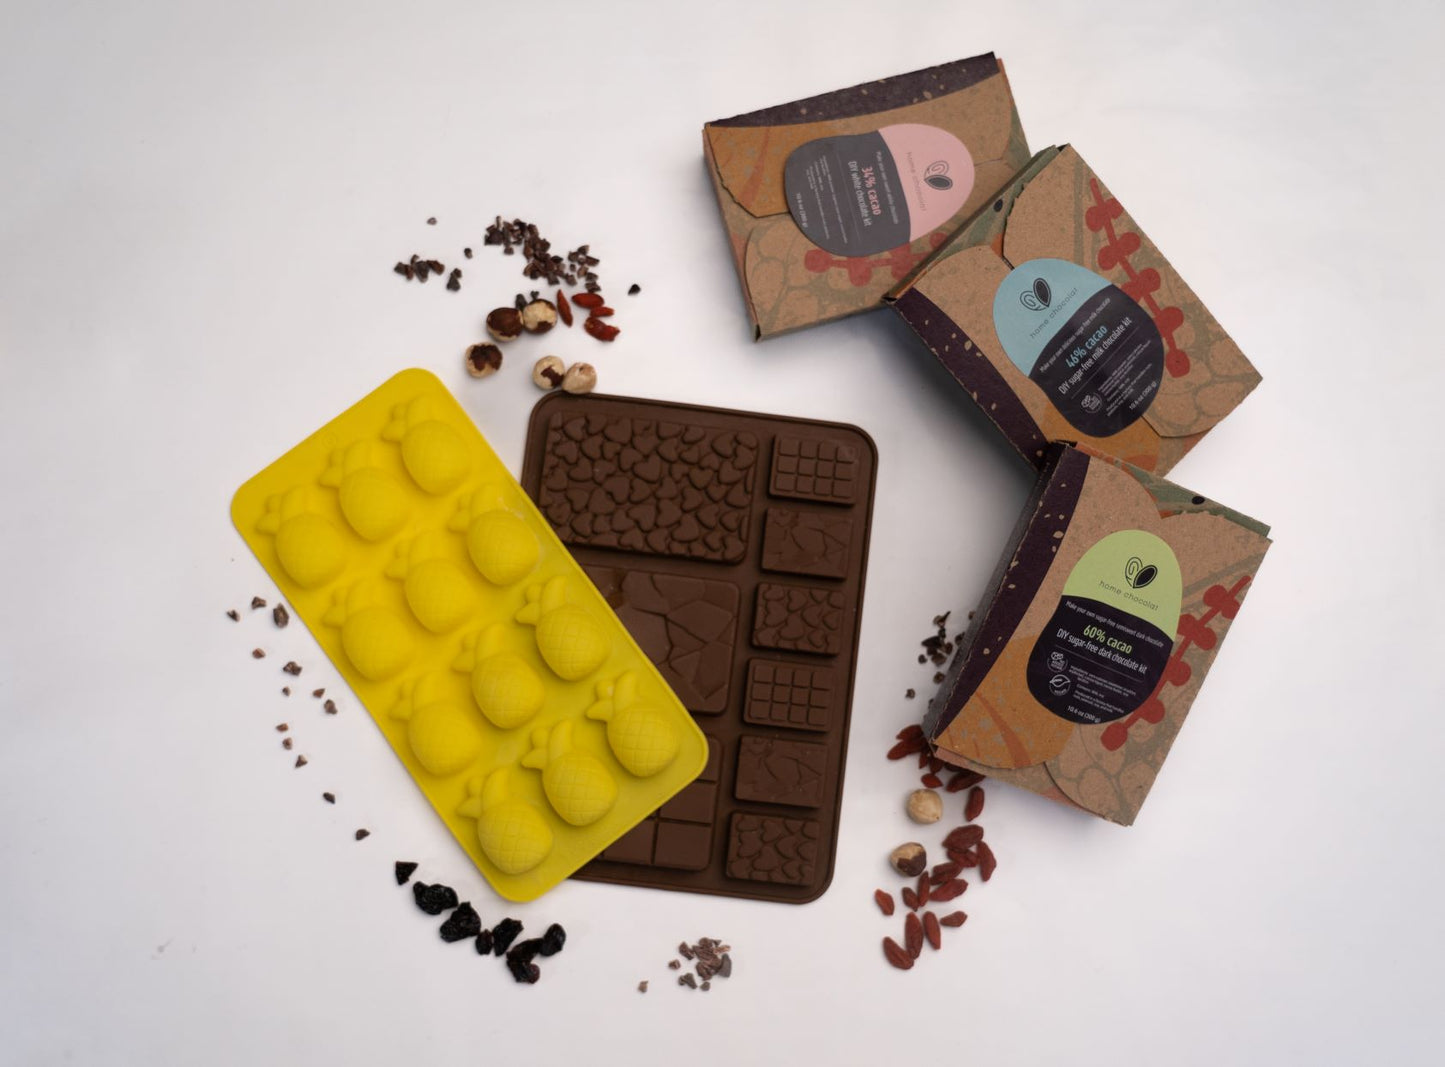 DIY Chocolate Starter Kit